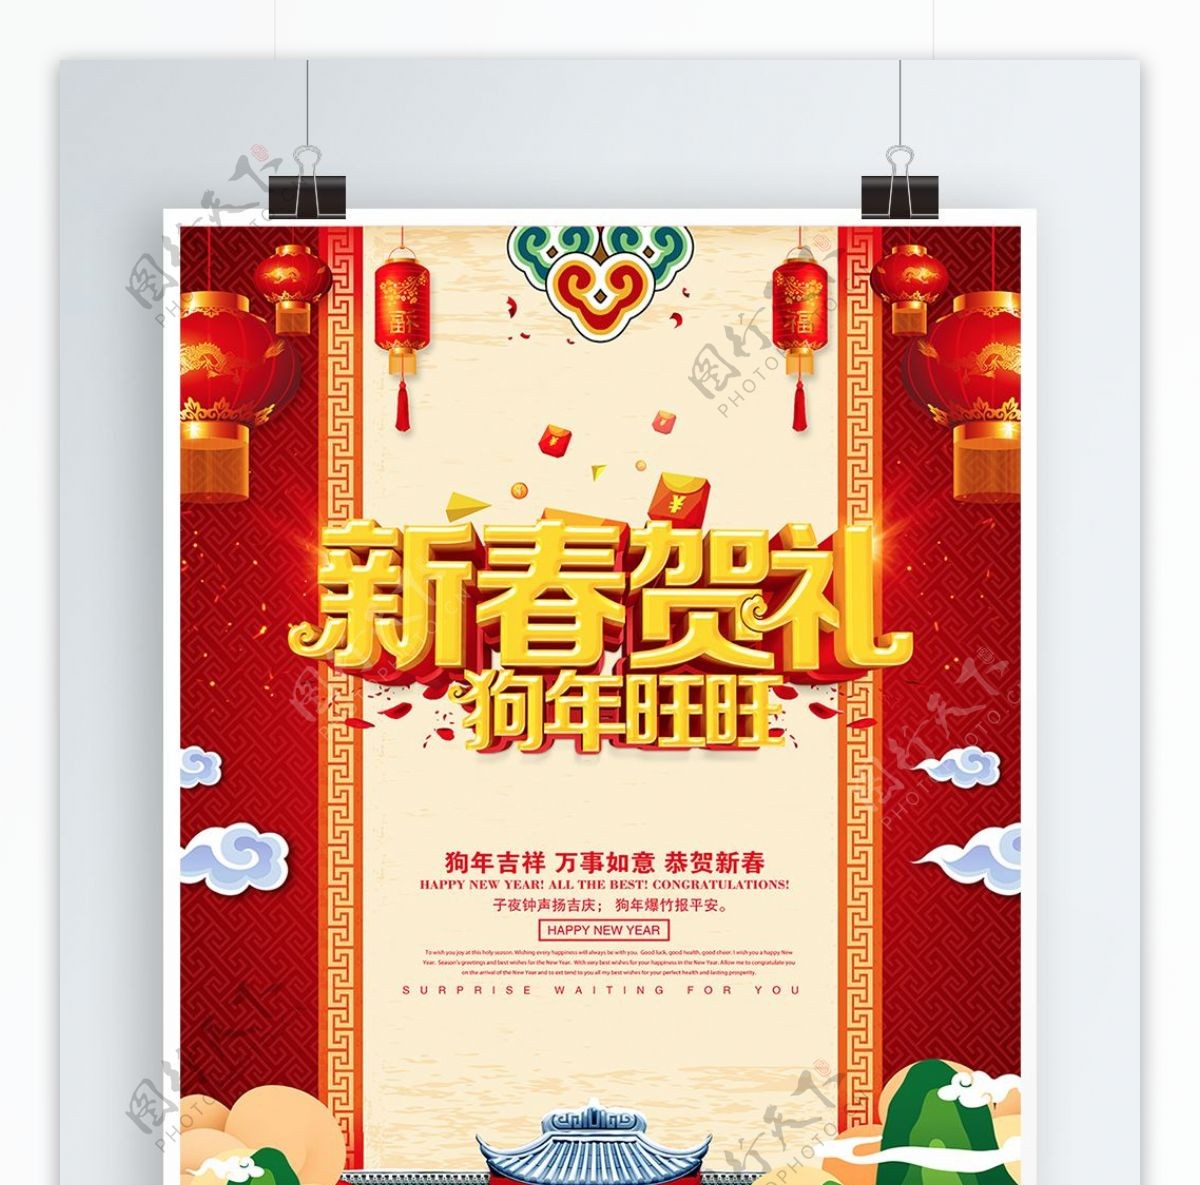 新春贺礼春节促销海报设计PSD模版